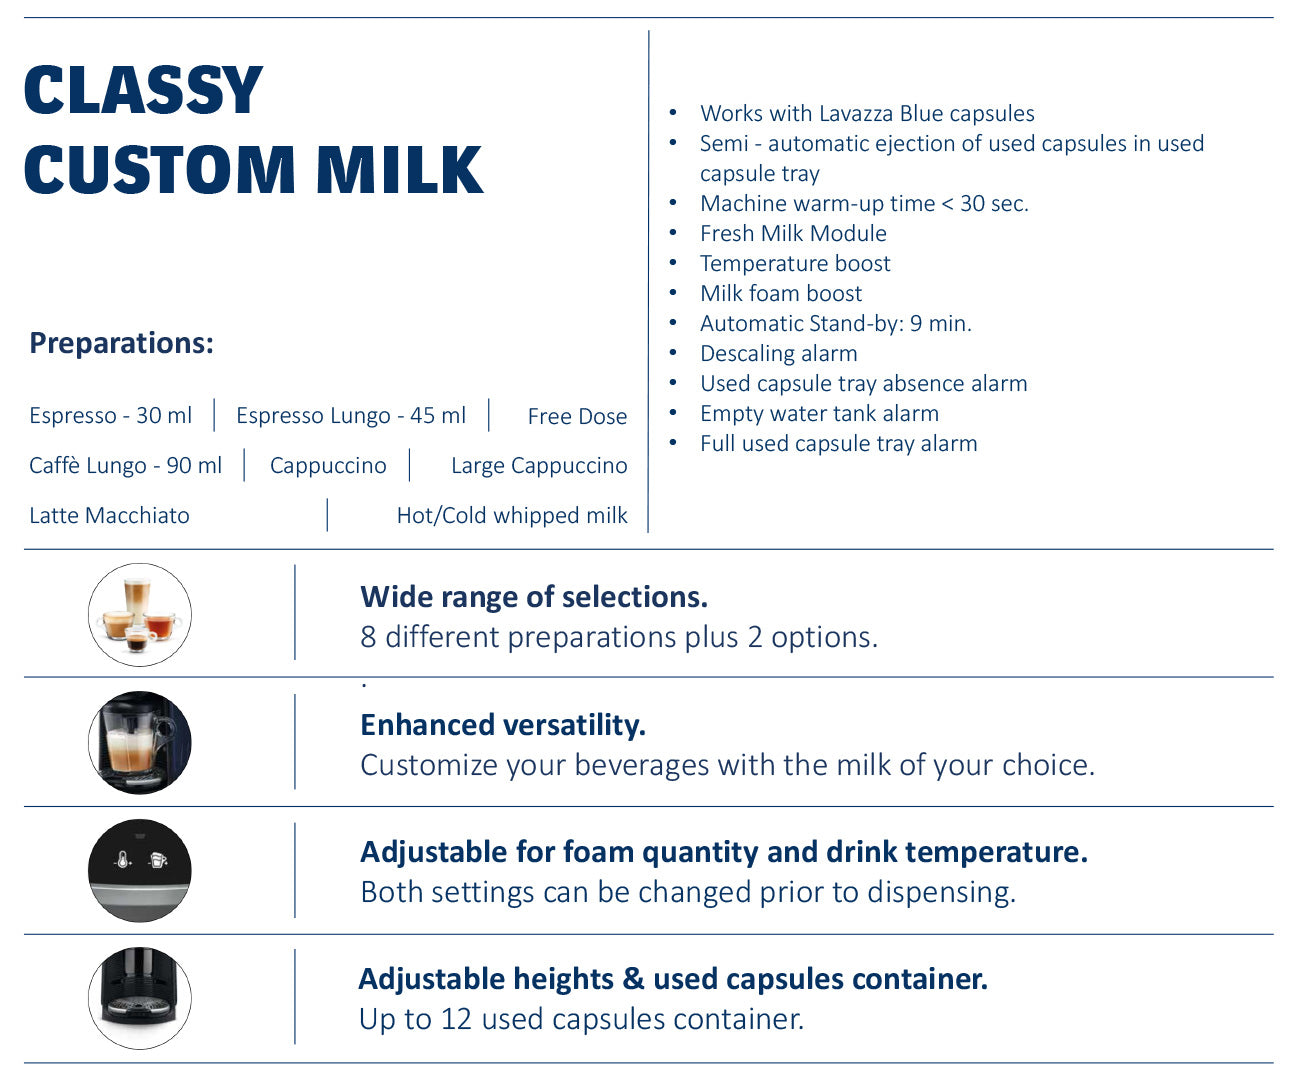 Lavazza Classy Custom Milk Features